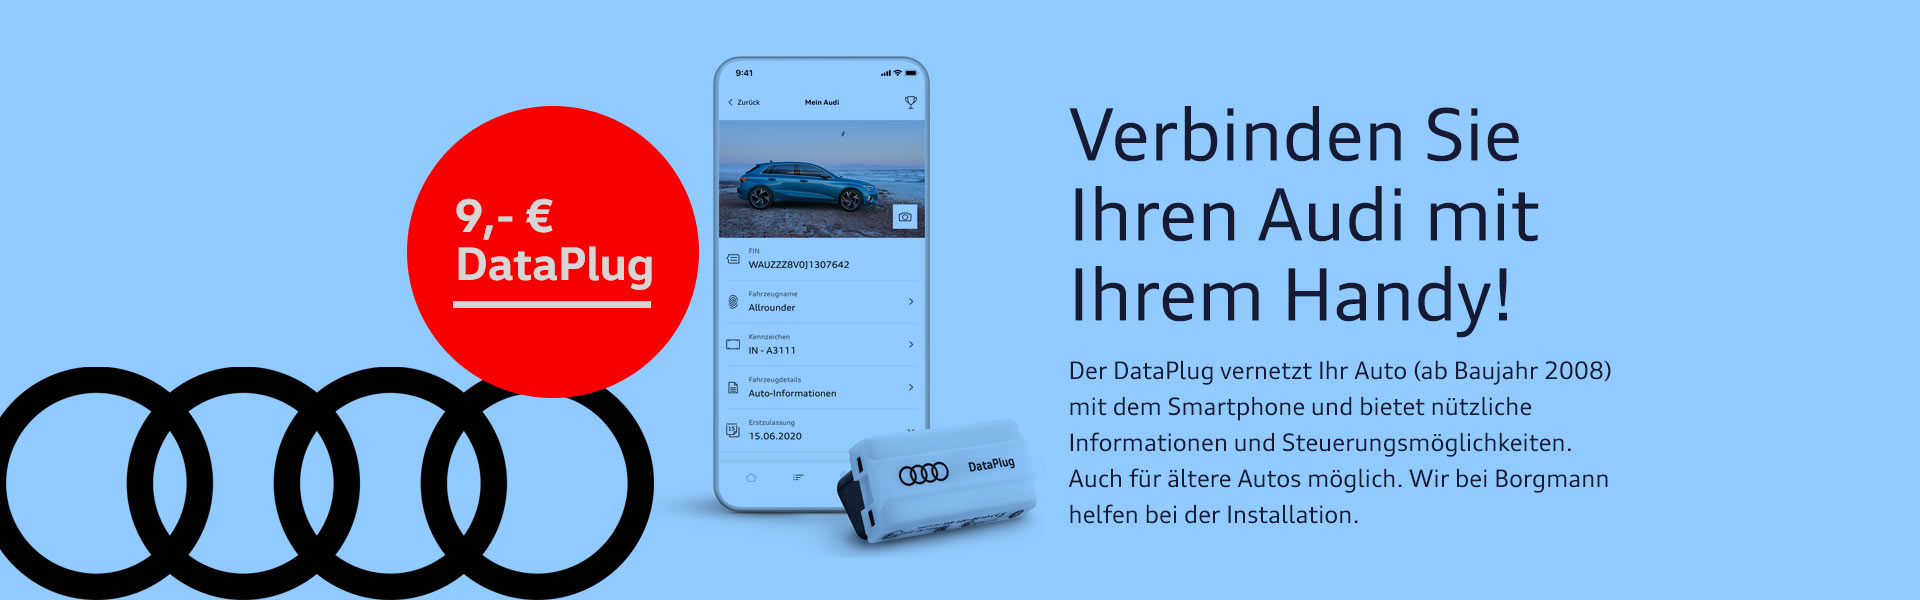 Audi Duftspender Singleframe orientalisch *Borgmann* für 15 EUR